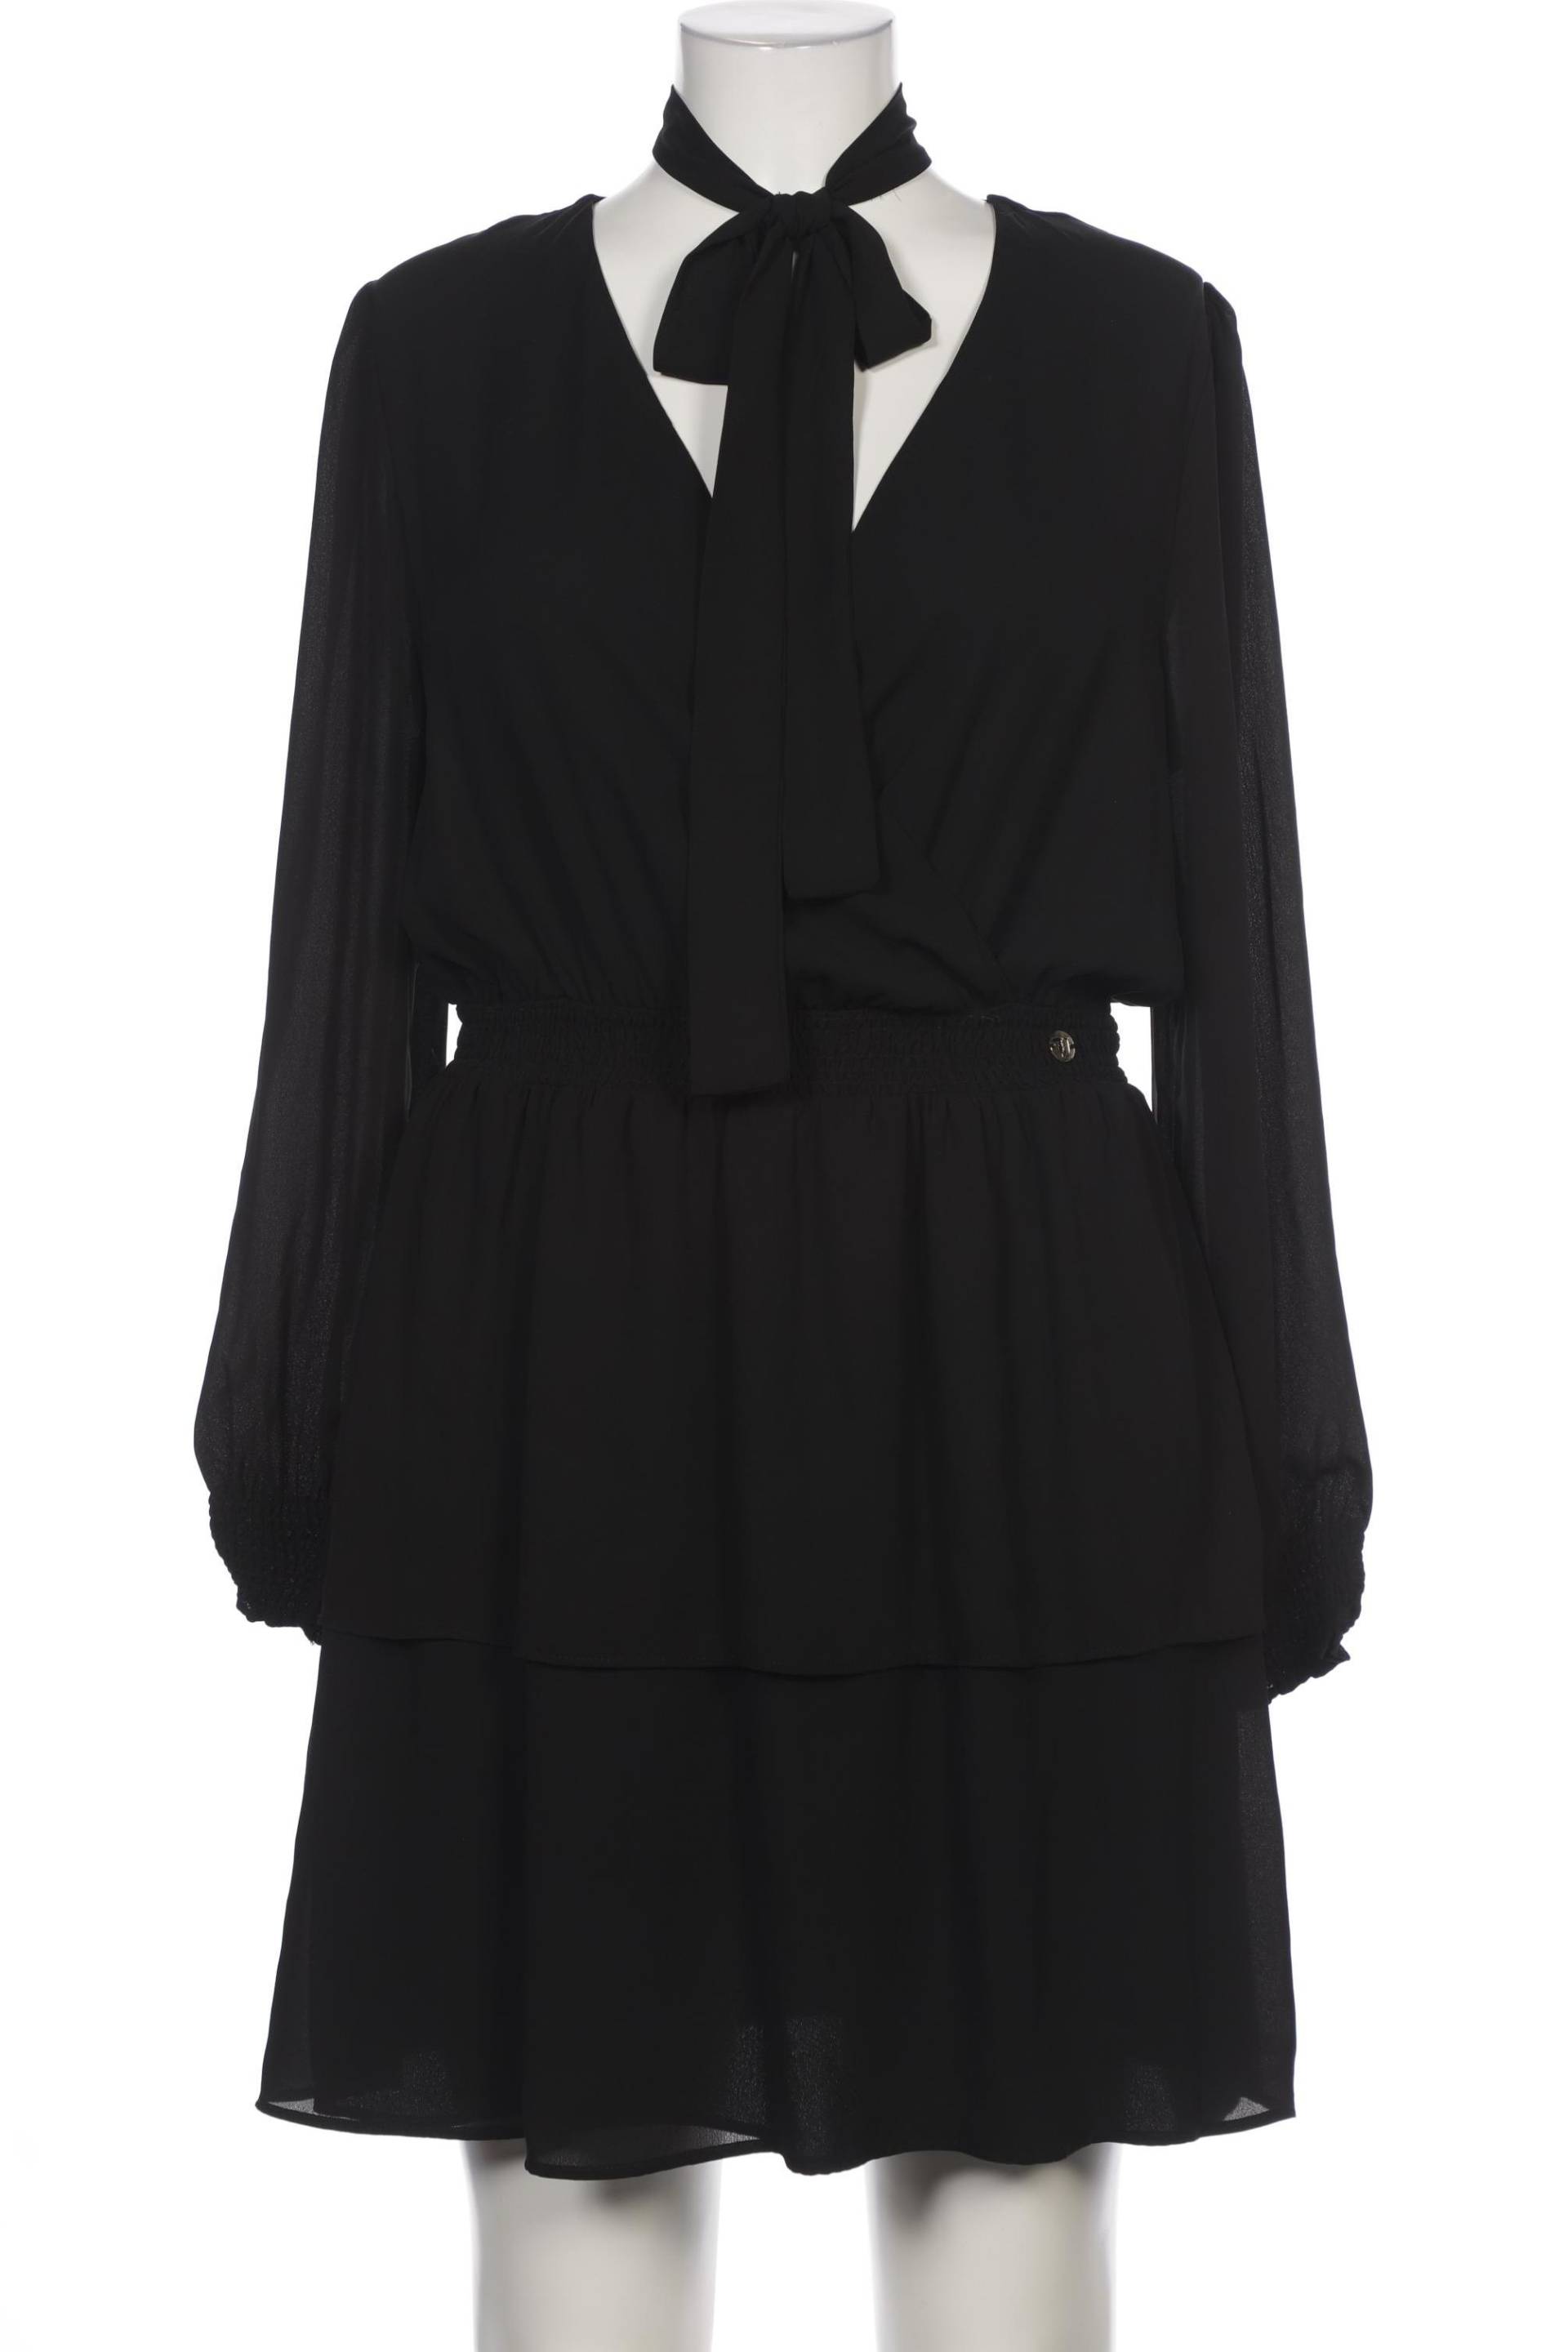 Trussardi Damen Kleid, schwarz von Trussardi